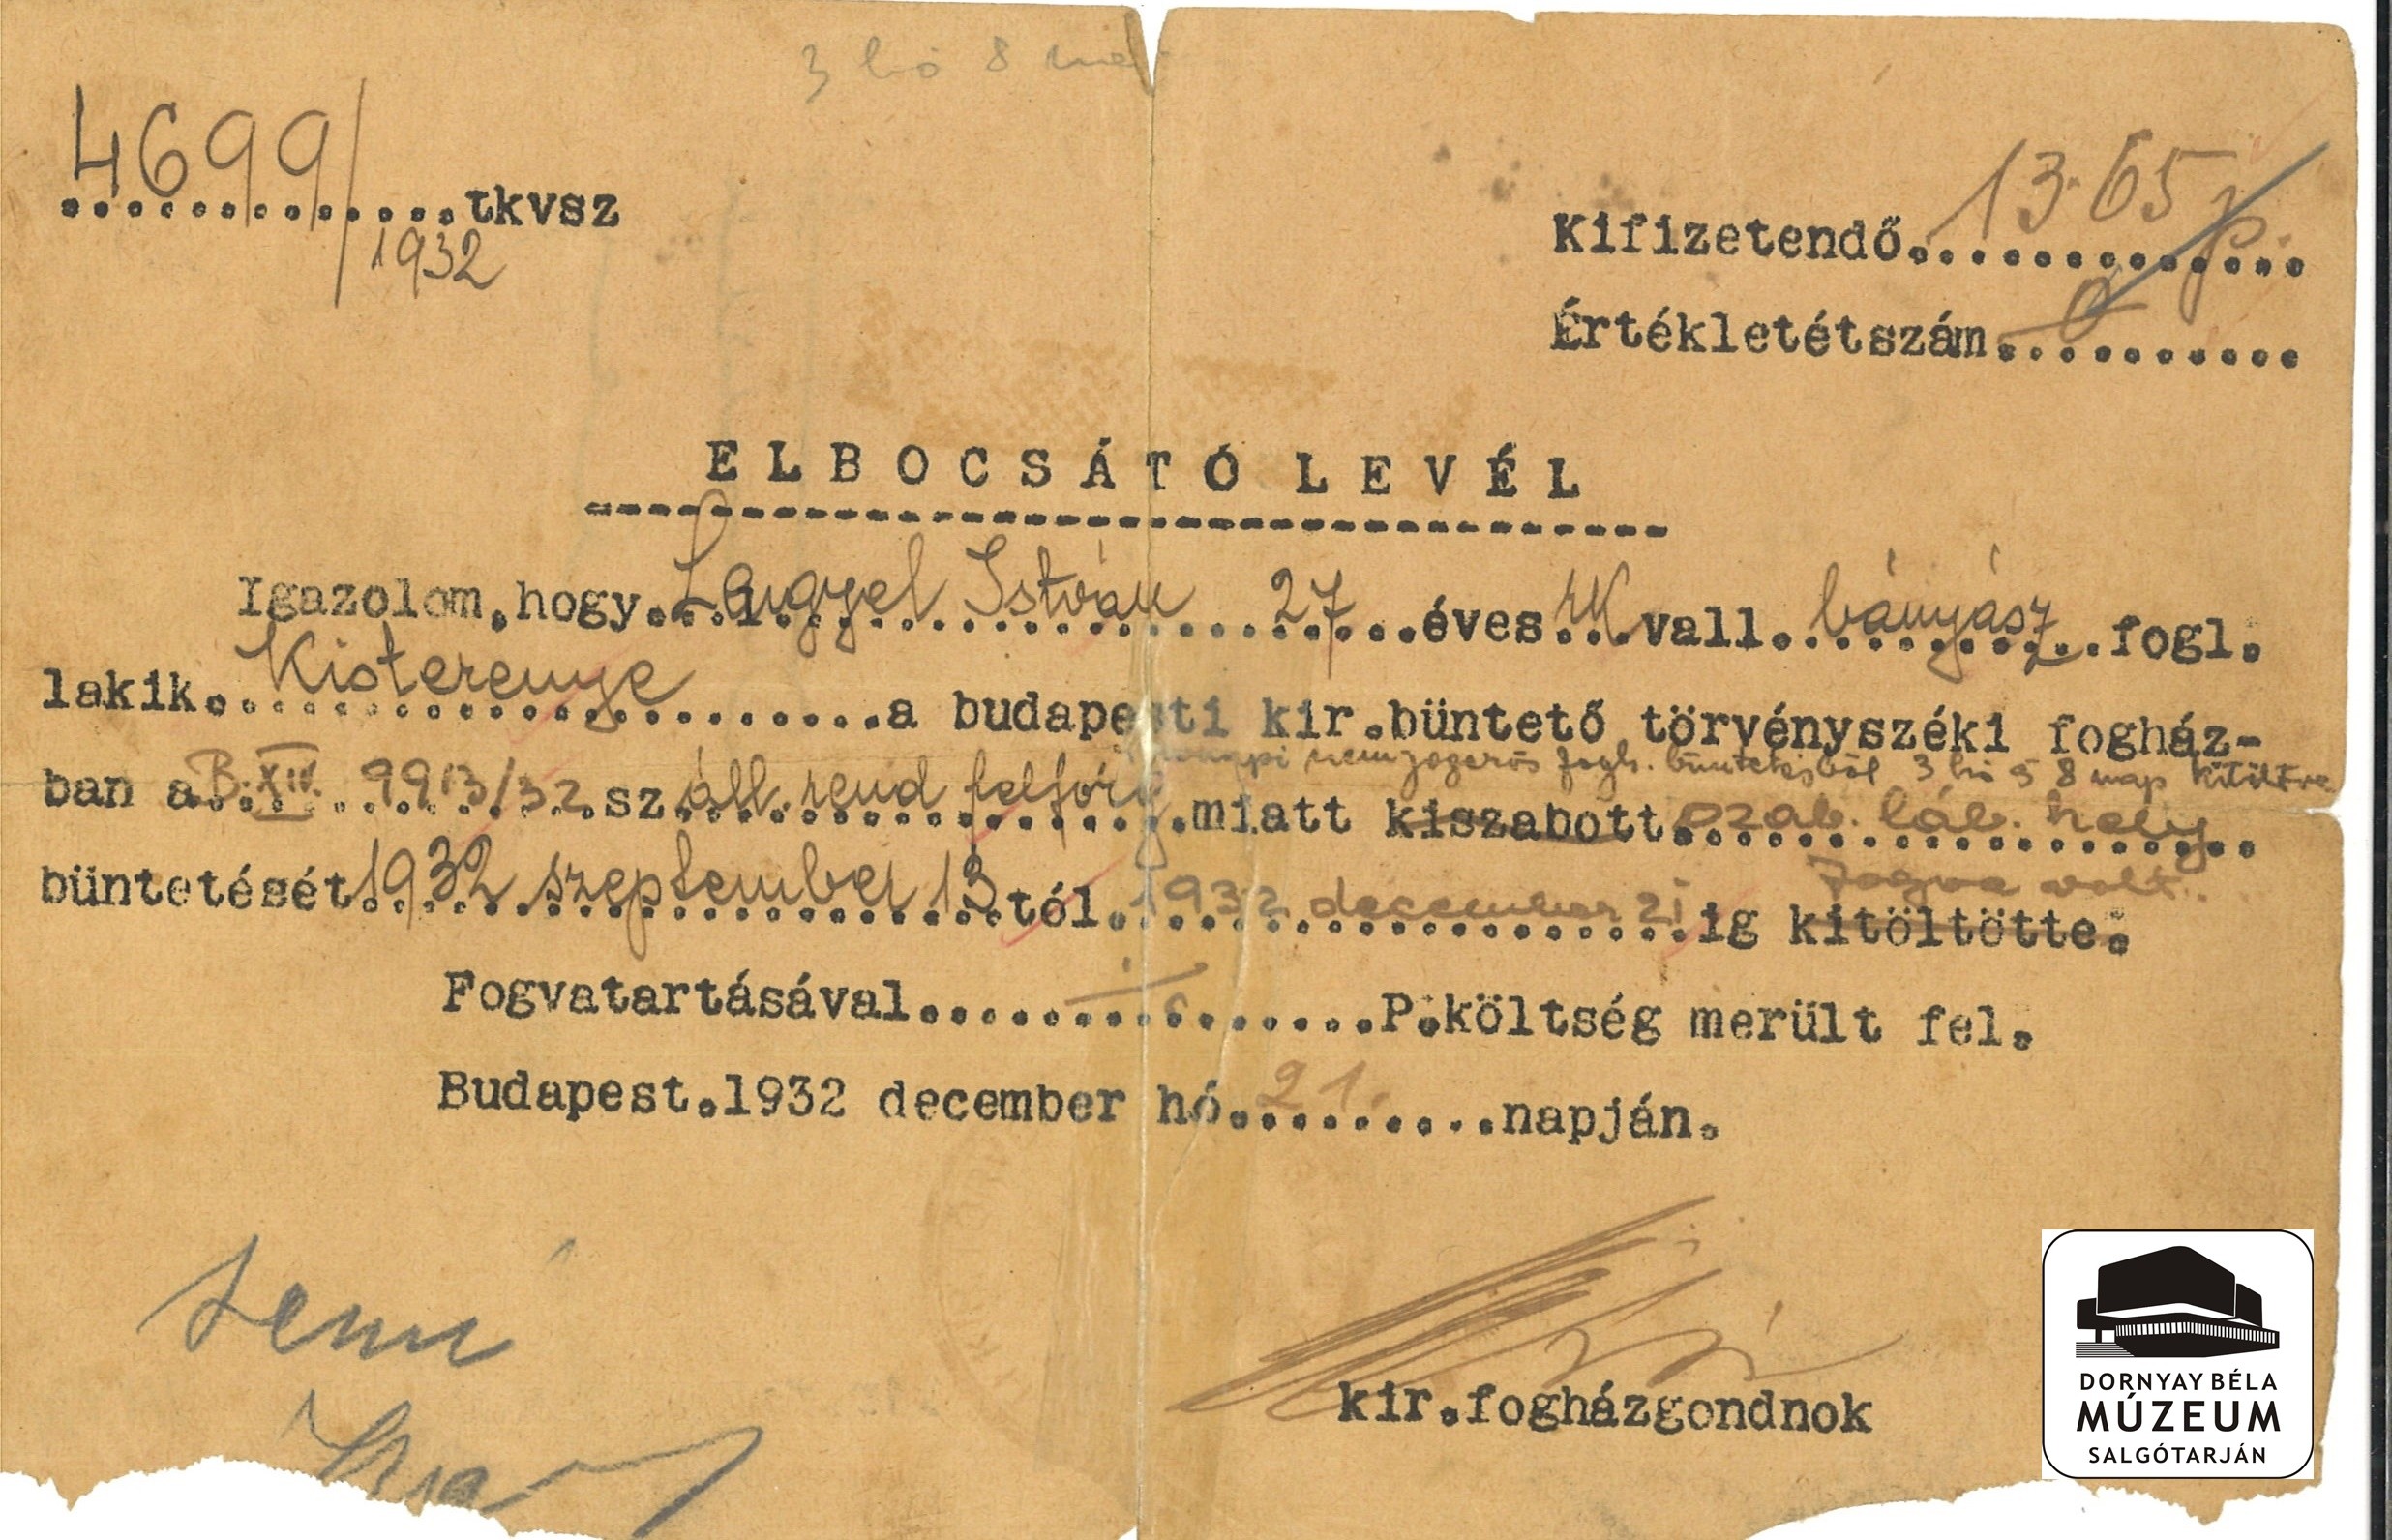 Lengyel István kisterenyei bányász elbocsátó levele a budapesti fogházból (Dornyay Béla Múzeum, Salgótarján CC BY-NC-SA)